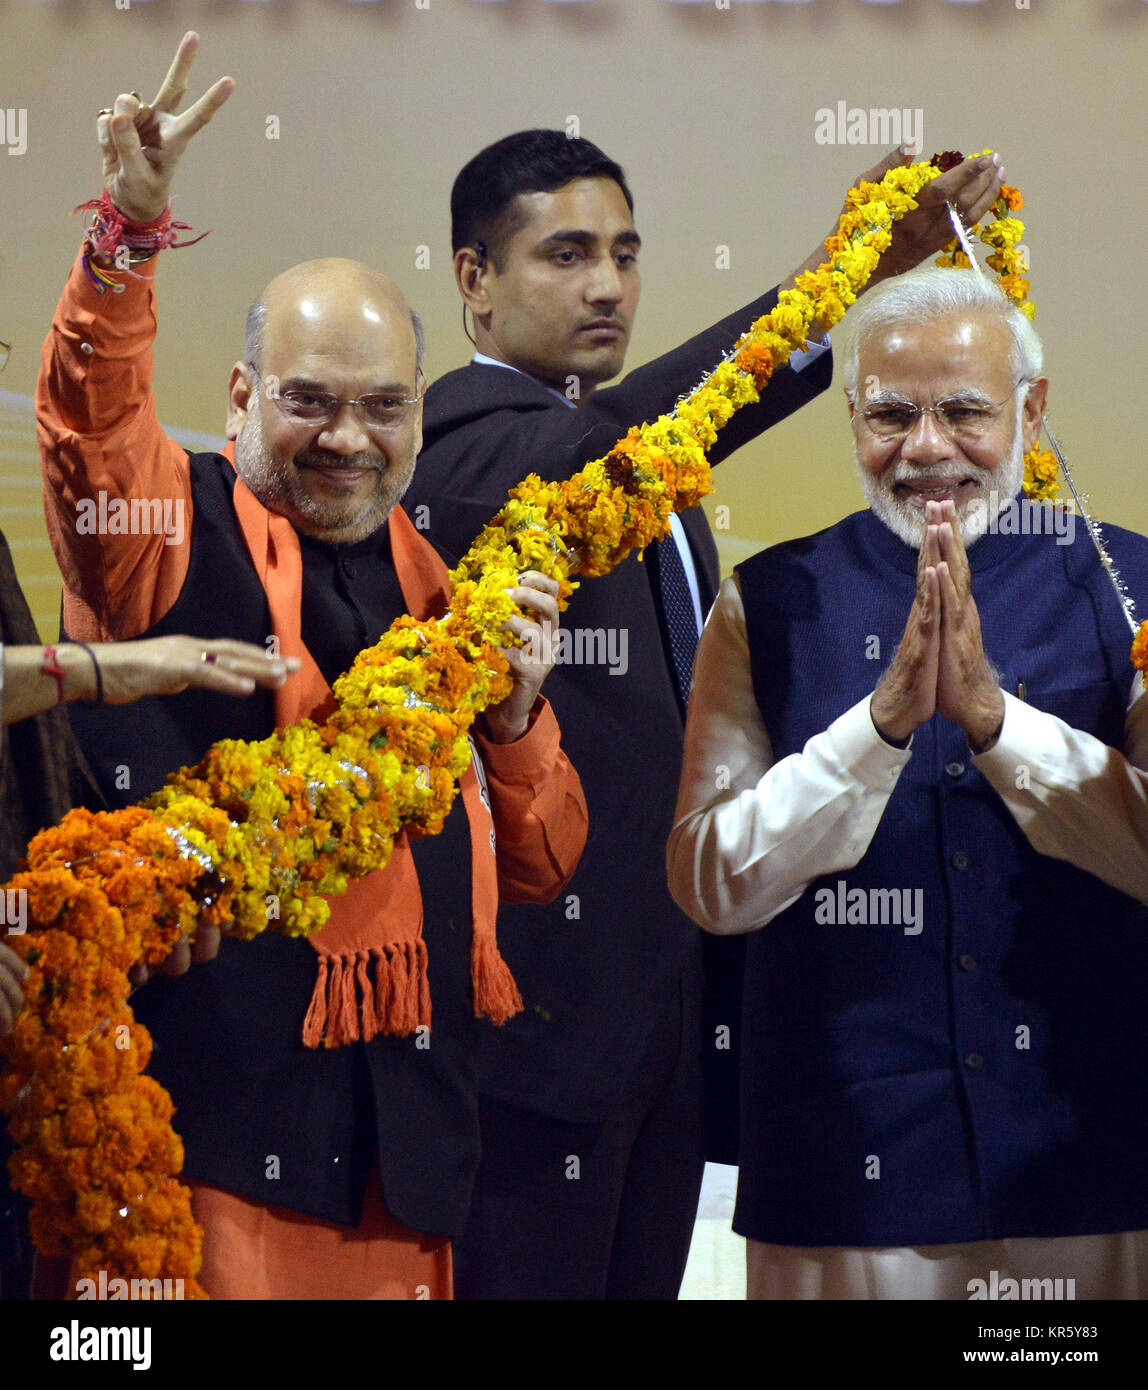 New Delhi, Inde. Dec 18, 2017. Le Premier Ministre indien Narendra Modi (R) et la décision de l'Inde Bharatiya Janata (BJP) chef d'Amit Shah geste pendant leur célébration à la BJP siège à New Delhi, Inde, 18 décembre 2017. L'Inde a remporté lundi BJP l'élection de l'assemblée dans l'ouest de l'état du Gujarat et de l'Himachal Pradesh dans le nord. Credit : Partha Sarkar/Xinhua/Alamy Live News Banque D'Images